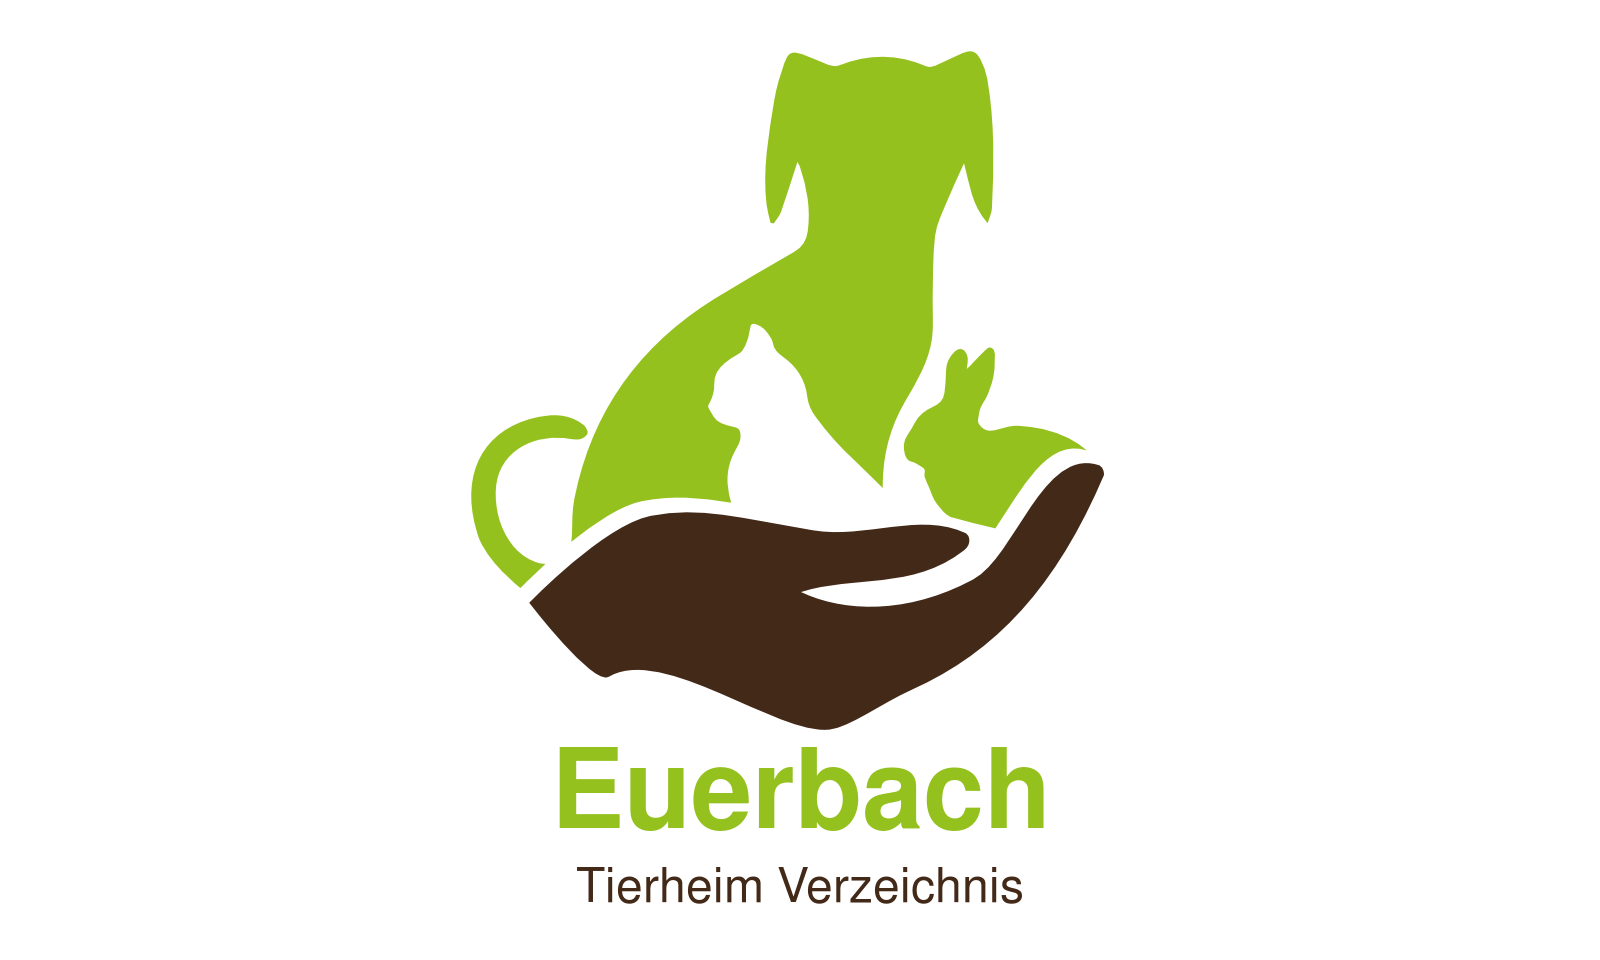 Tierheim Euerbach